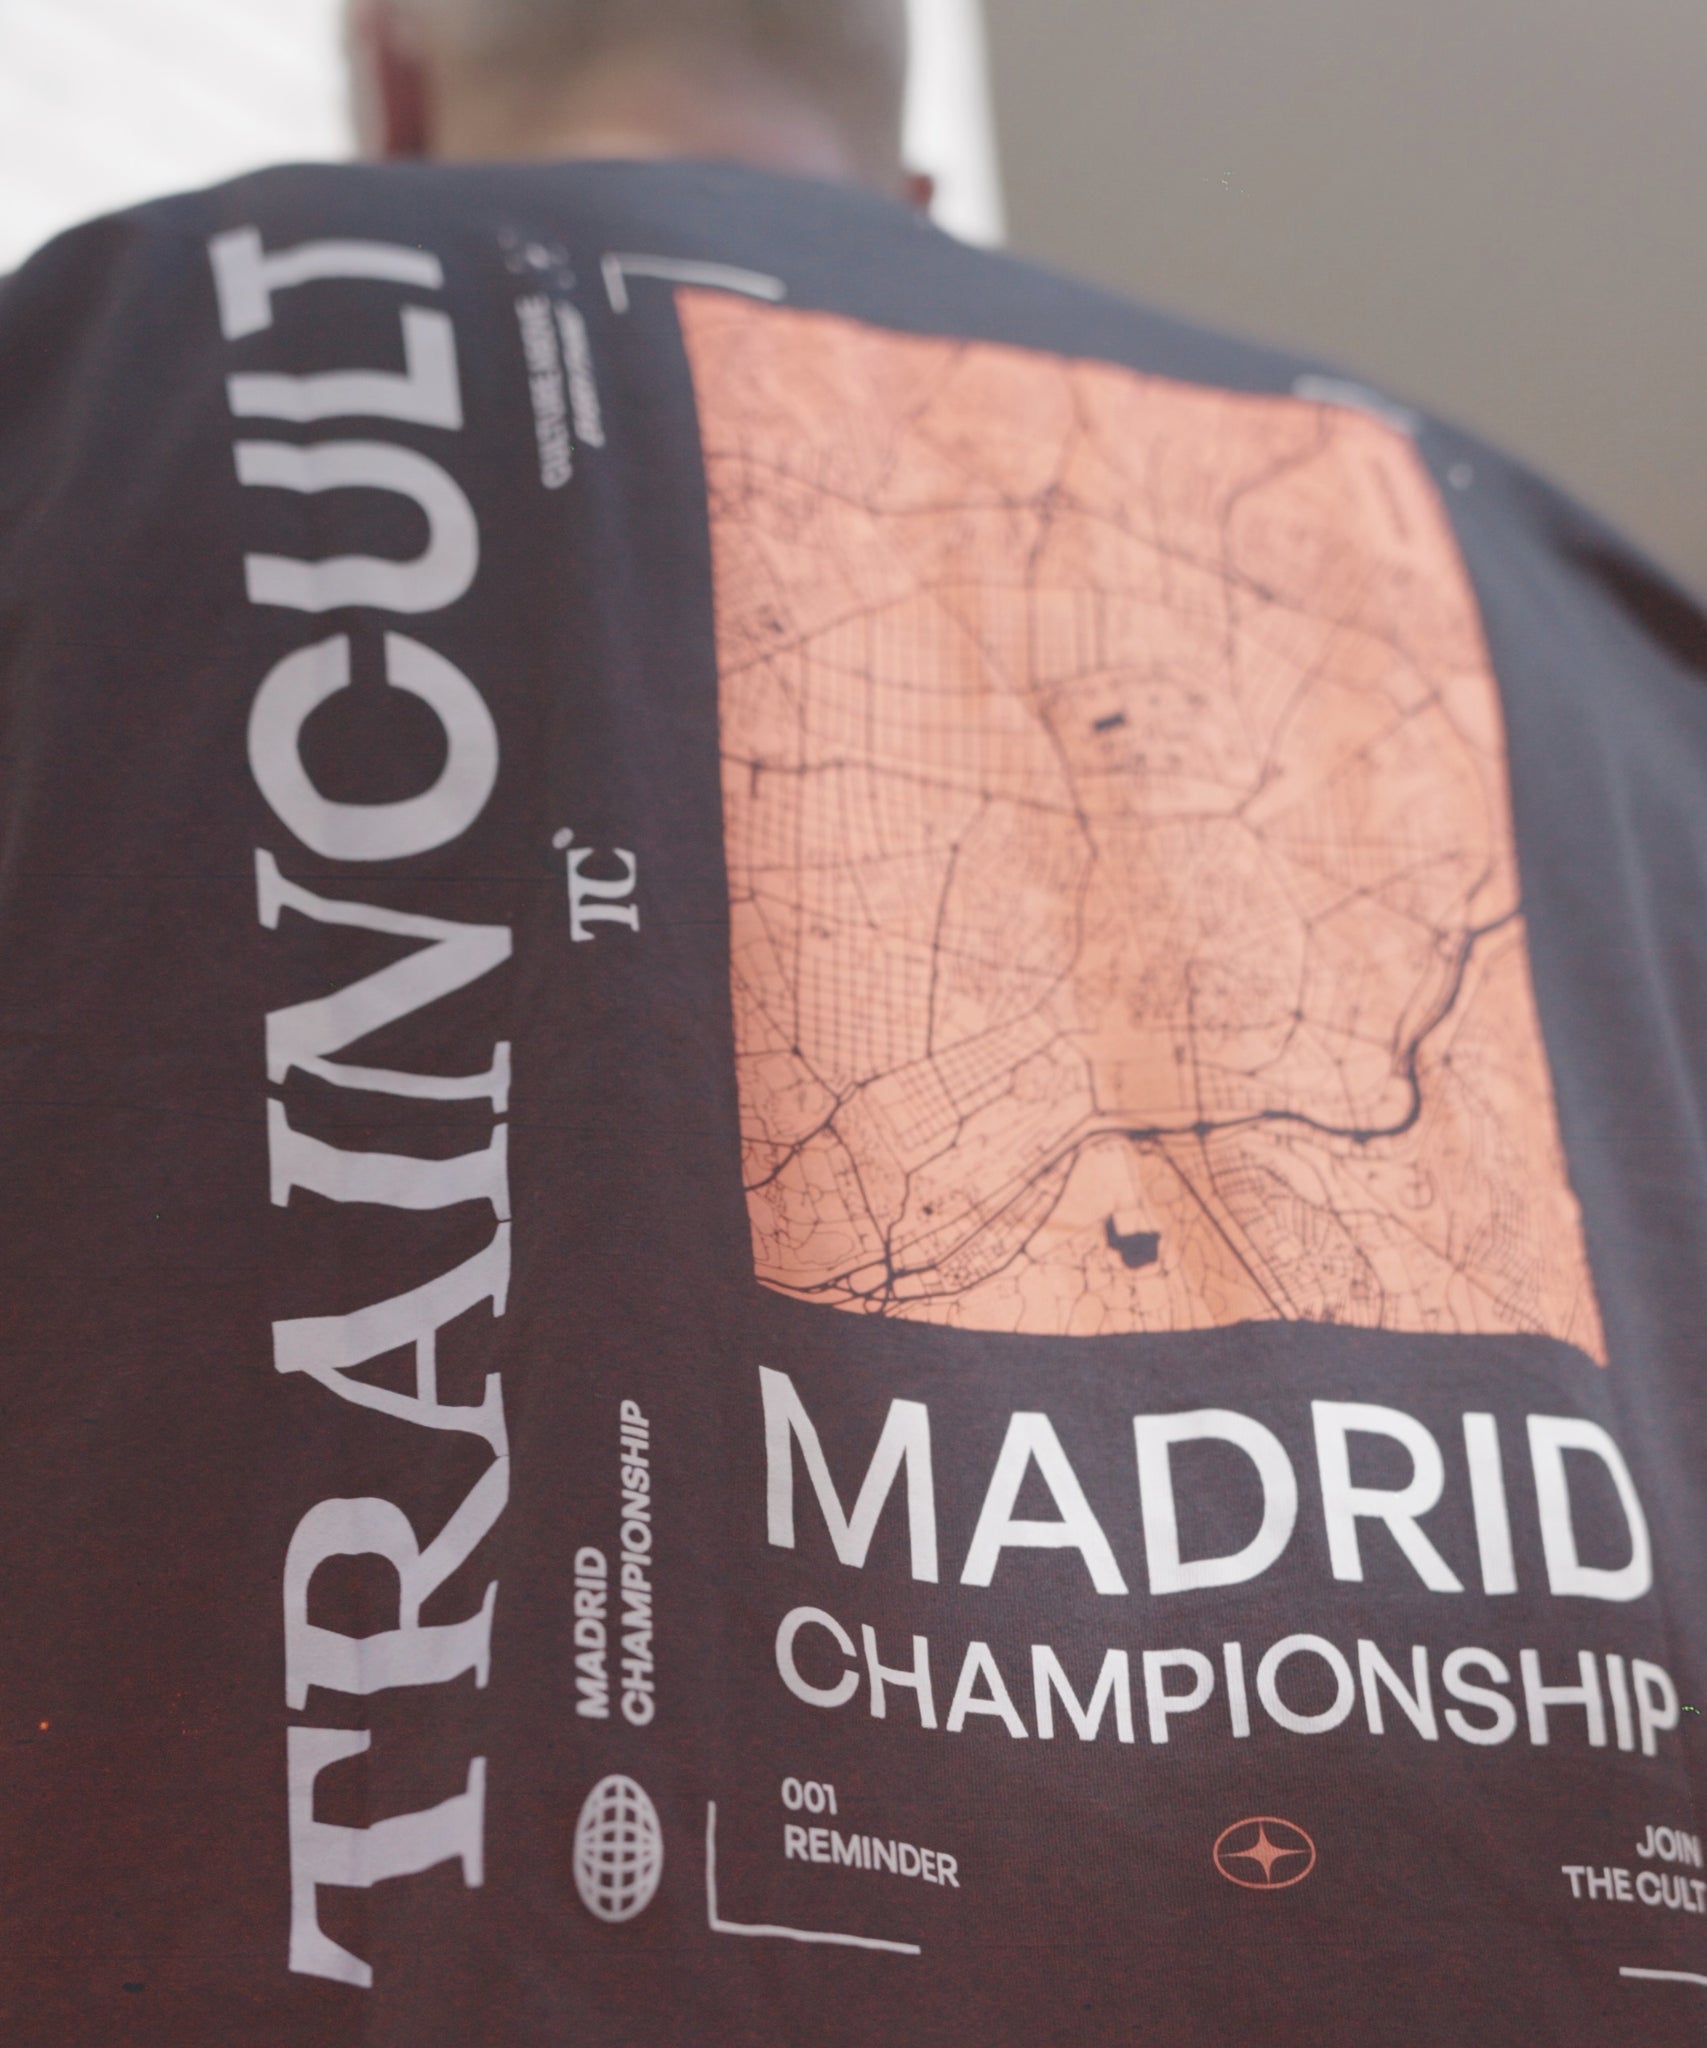 Camiseta Traincult Madrid Championship Map